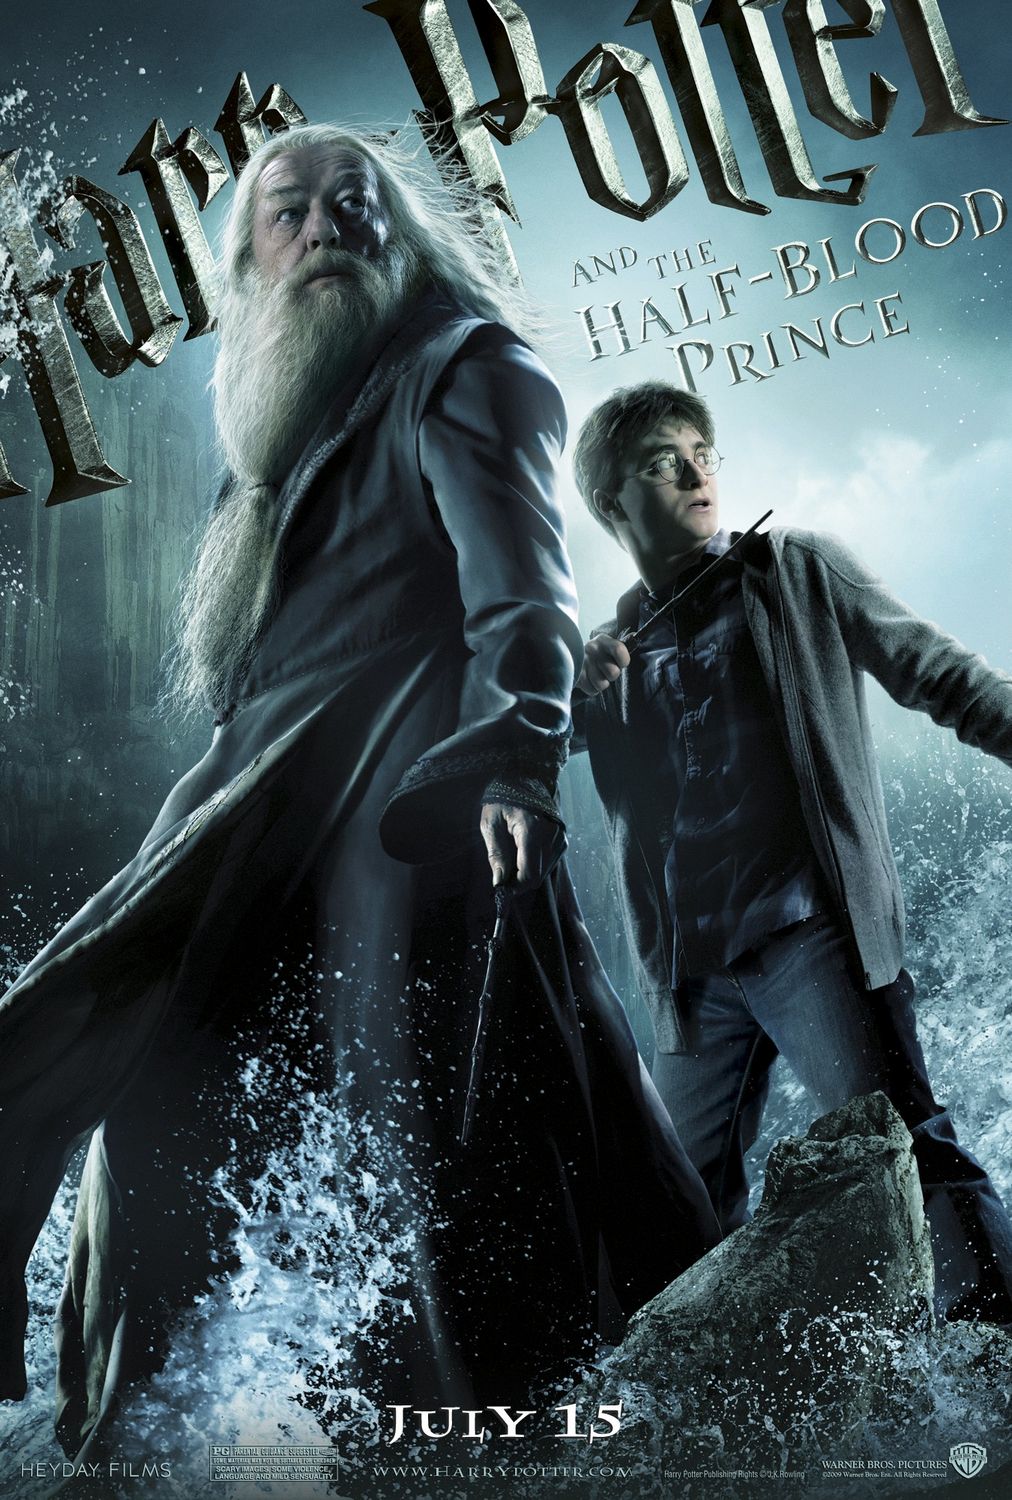 Постер - Гарри Поттер и Принц-полукровка: 1012x1500 / 318 Кб